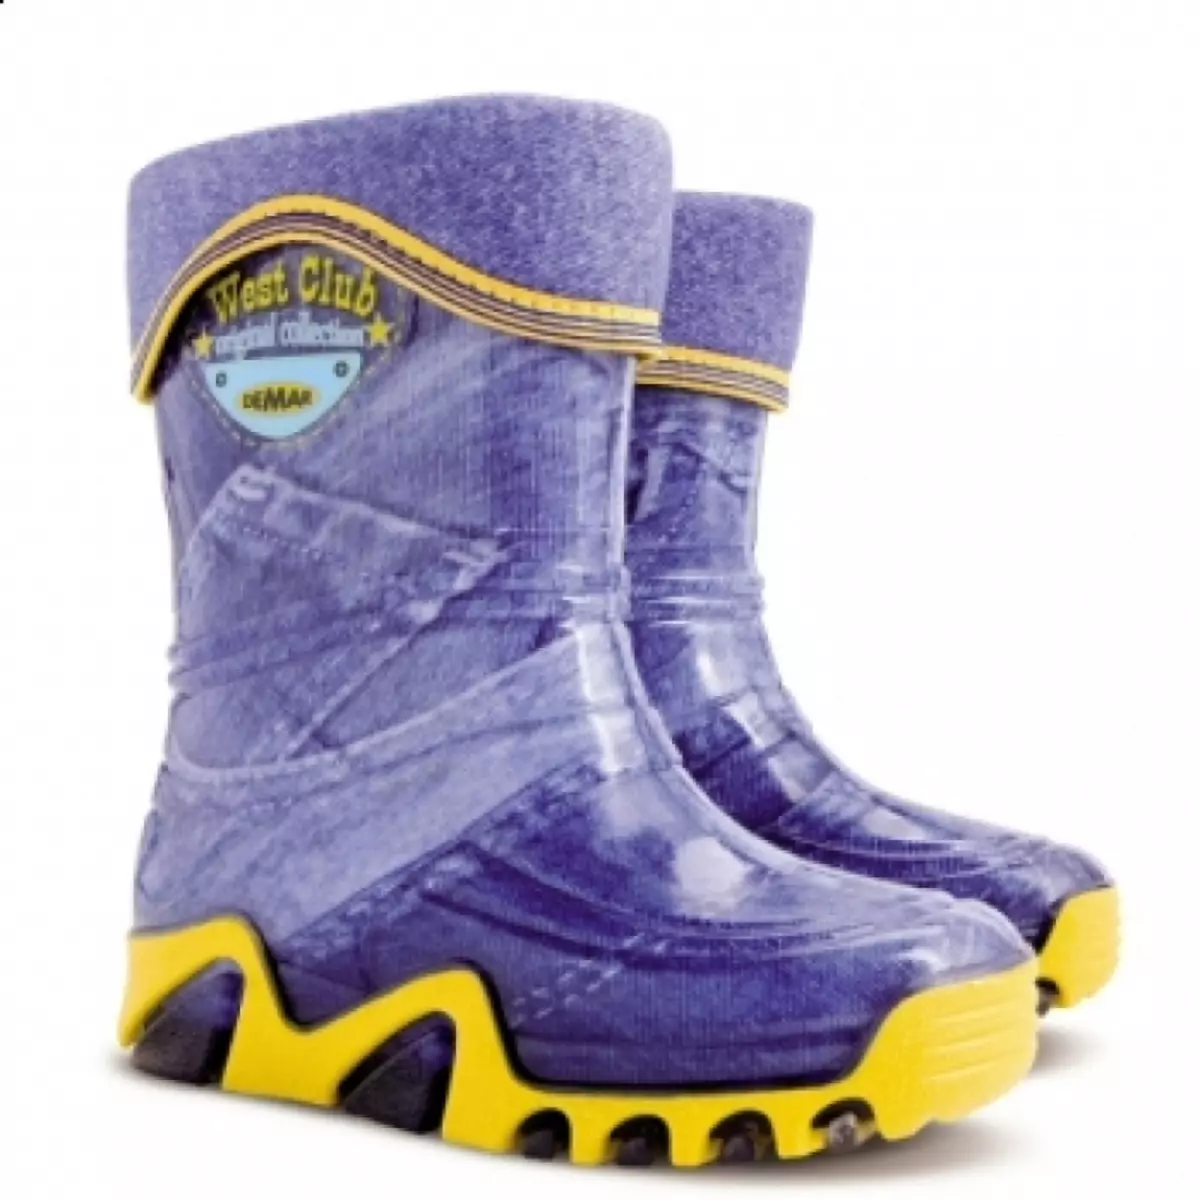 Lastik Boots Demar (67 Fotoğraf): Çocuk ayakkabısı, yalıtımlı modeller hakkında yorumlar 2236_11